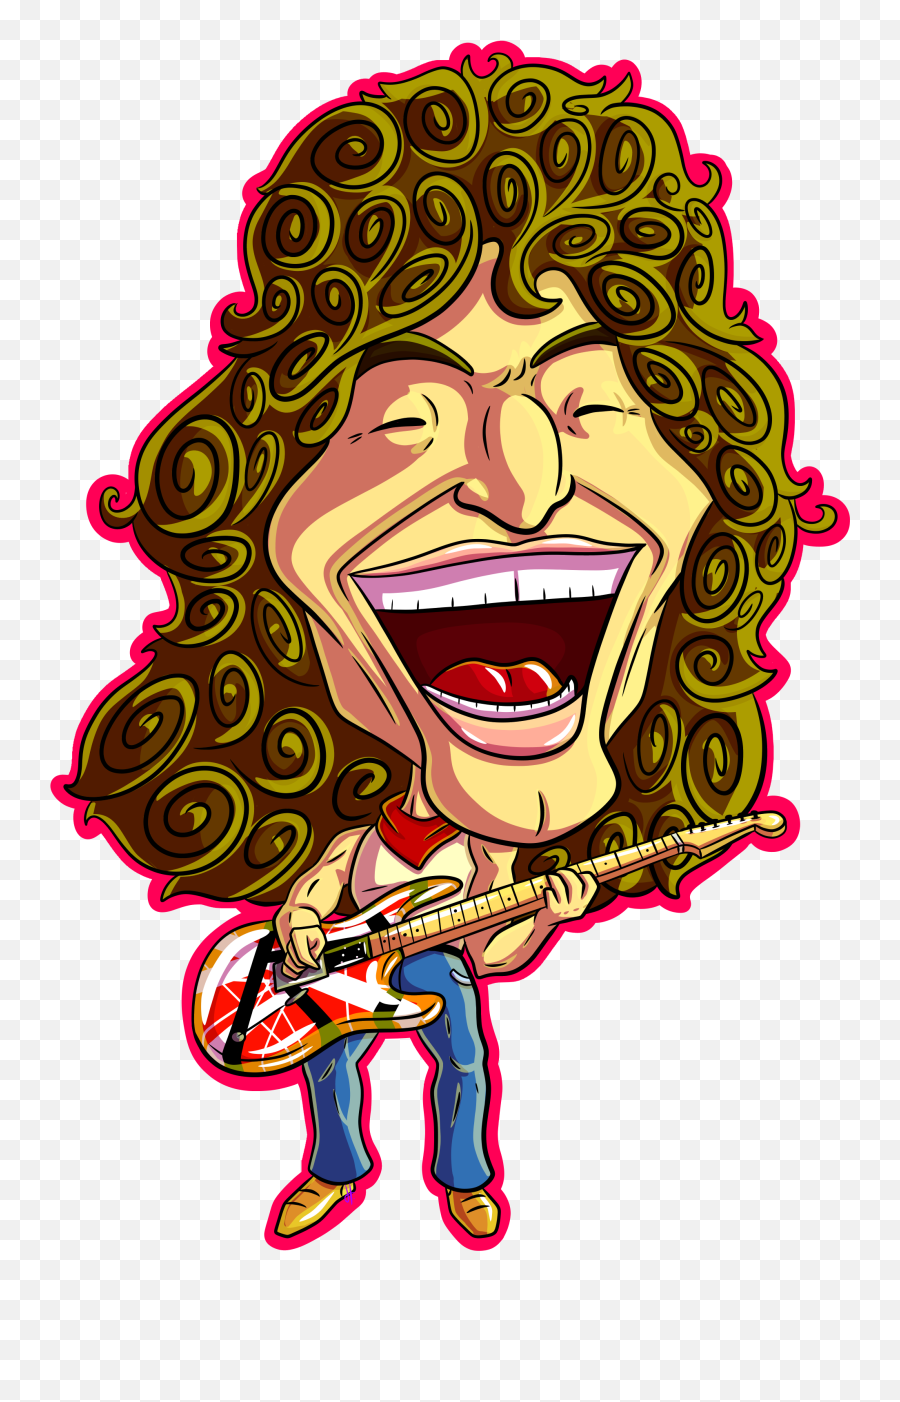 Rip Eddie Van Halen By Pd - Cartoons On Newgrounds Eddie Van Halen Cartoon Png,Van Halen Logo Png